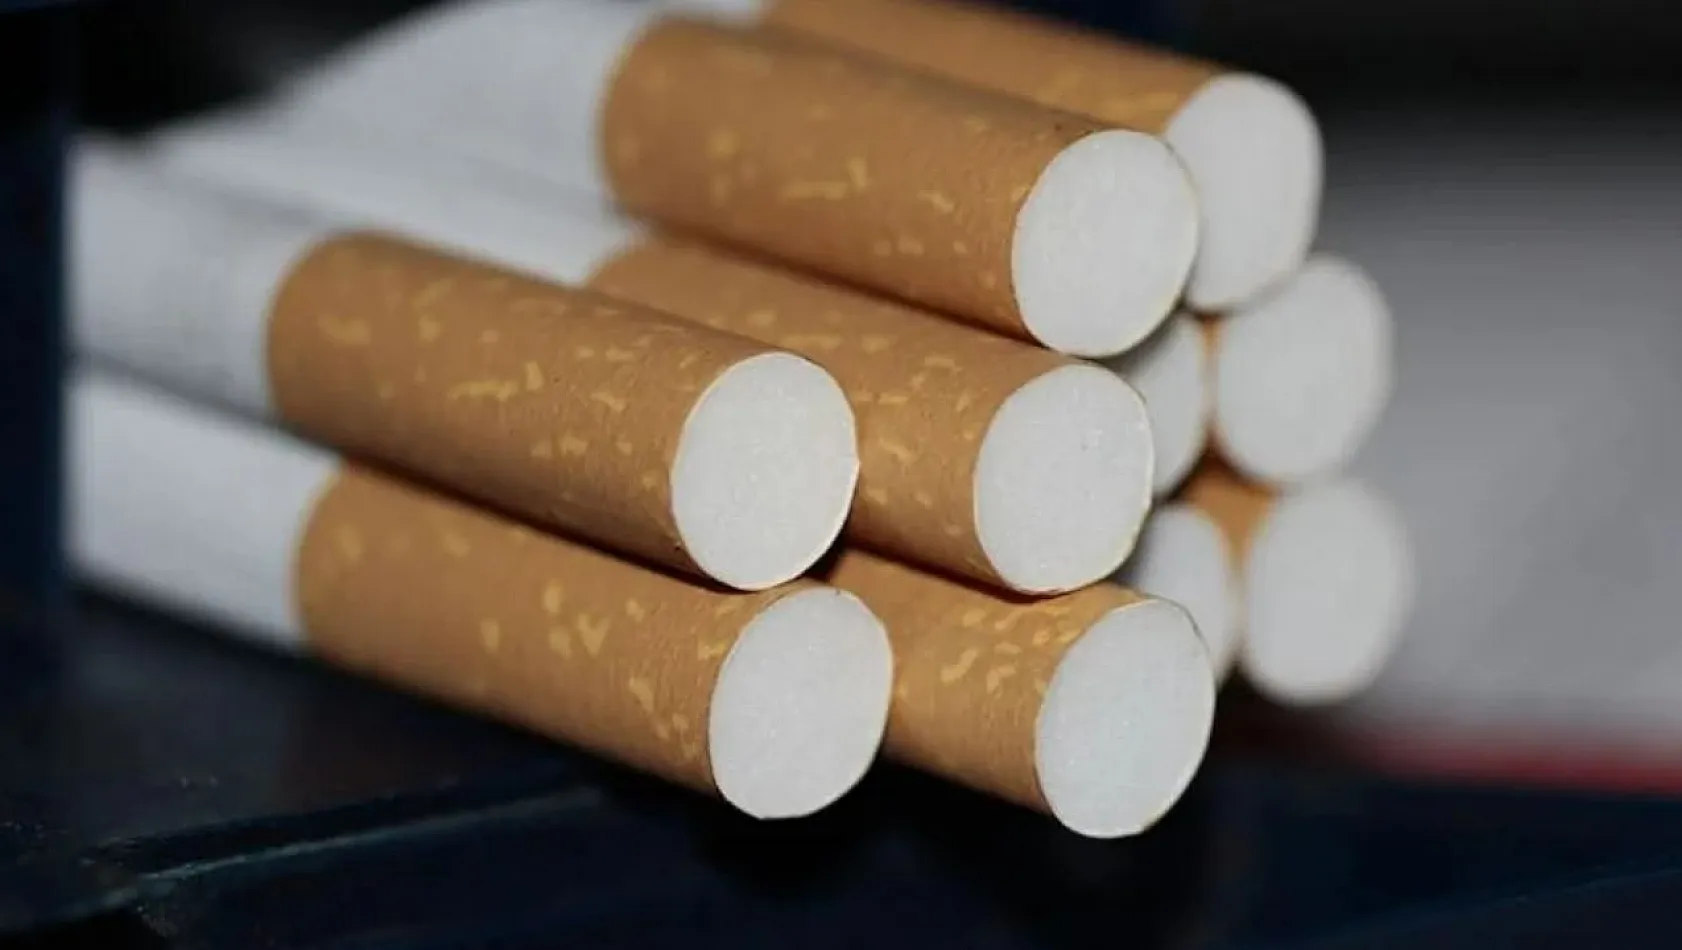 Bir paketteki 20 sigaranın 16 tanesi vergi